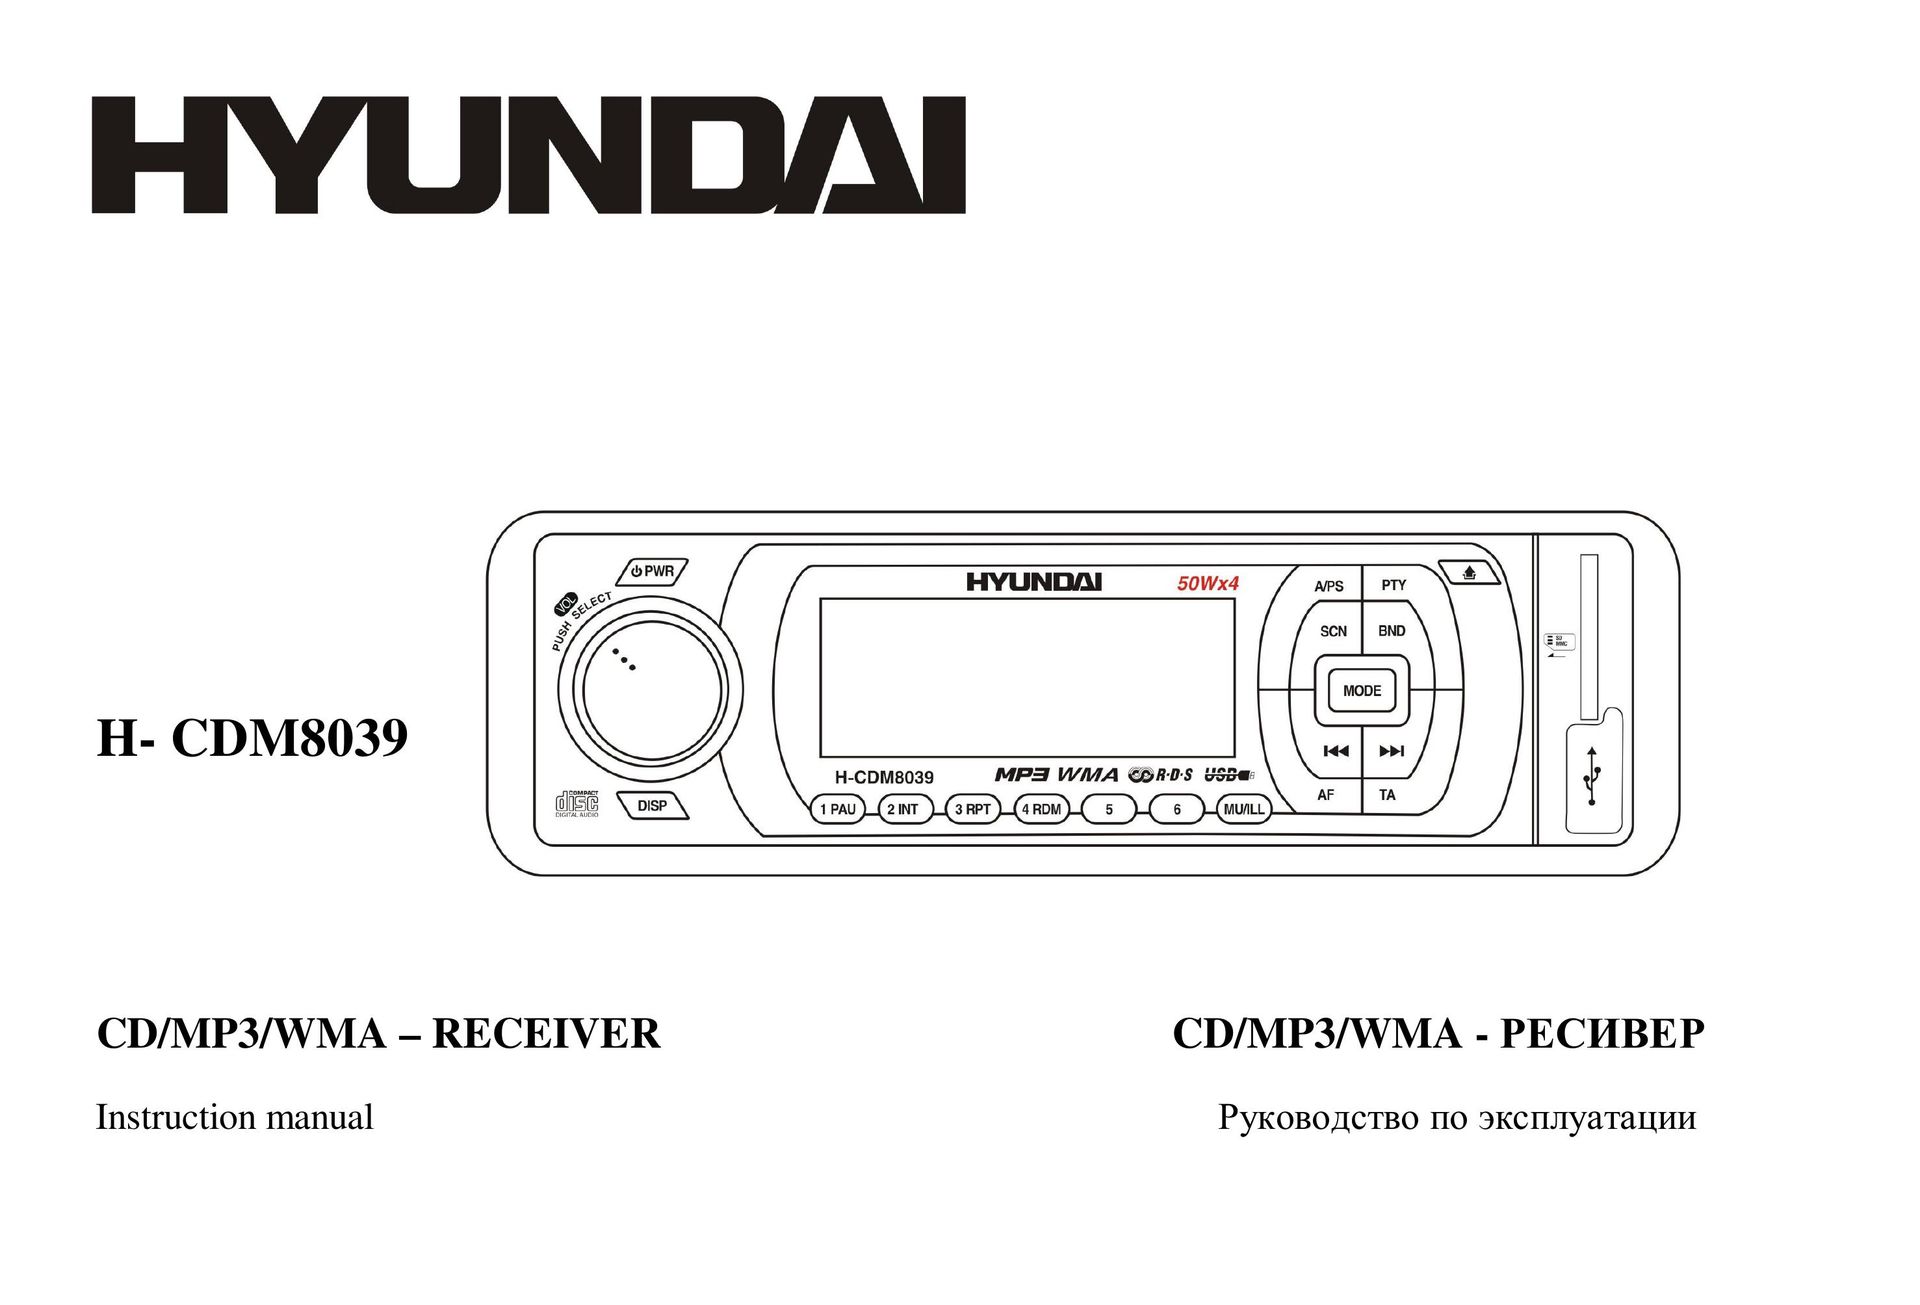 Hyundai H- CDM8039 Car Stereo System User Manual